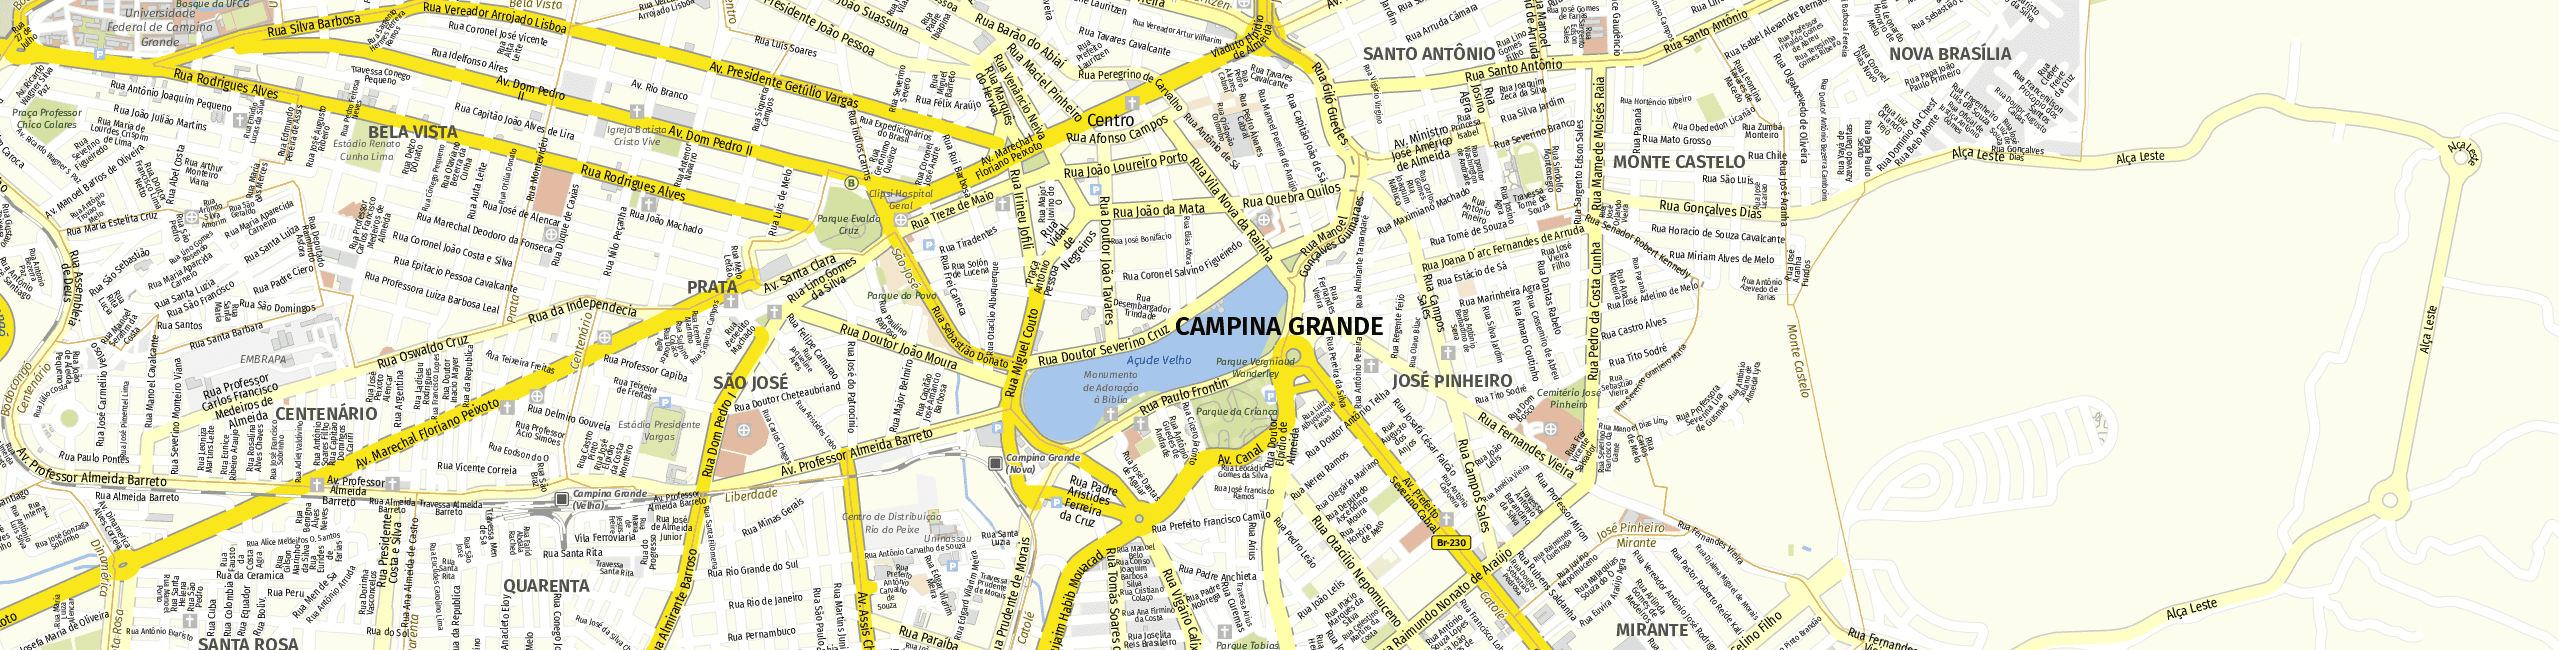 Stadtplan Campina Grande zum Downloaden.